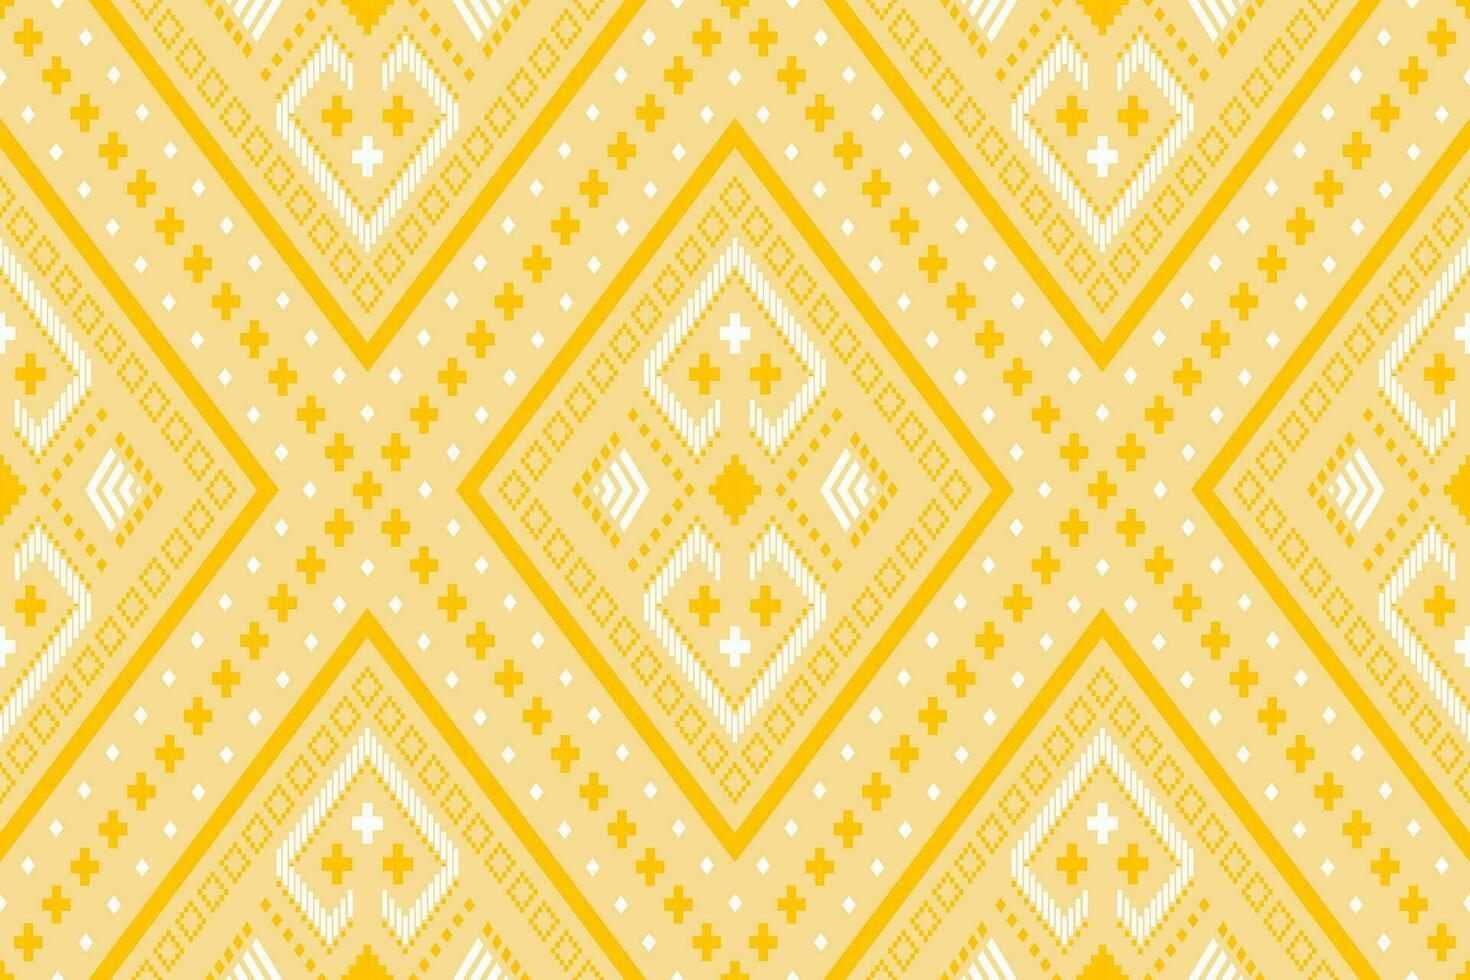 gul årgångar korsa sy traditionell etnisk mönster paisley blomma ikat bakgrund abstrakt aztec afrikansk indonesiska indisk sömlös mönster för tyg skriva ut trasa klänning matta gardiner och sarong vektor